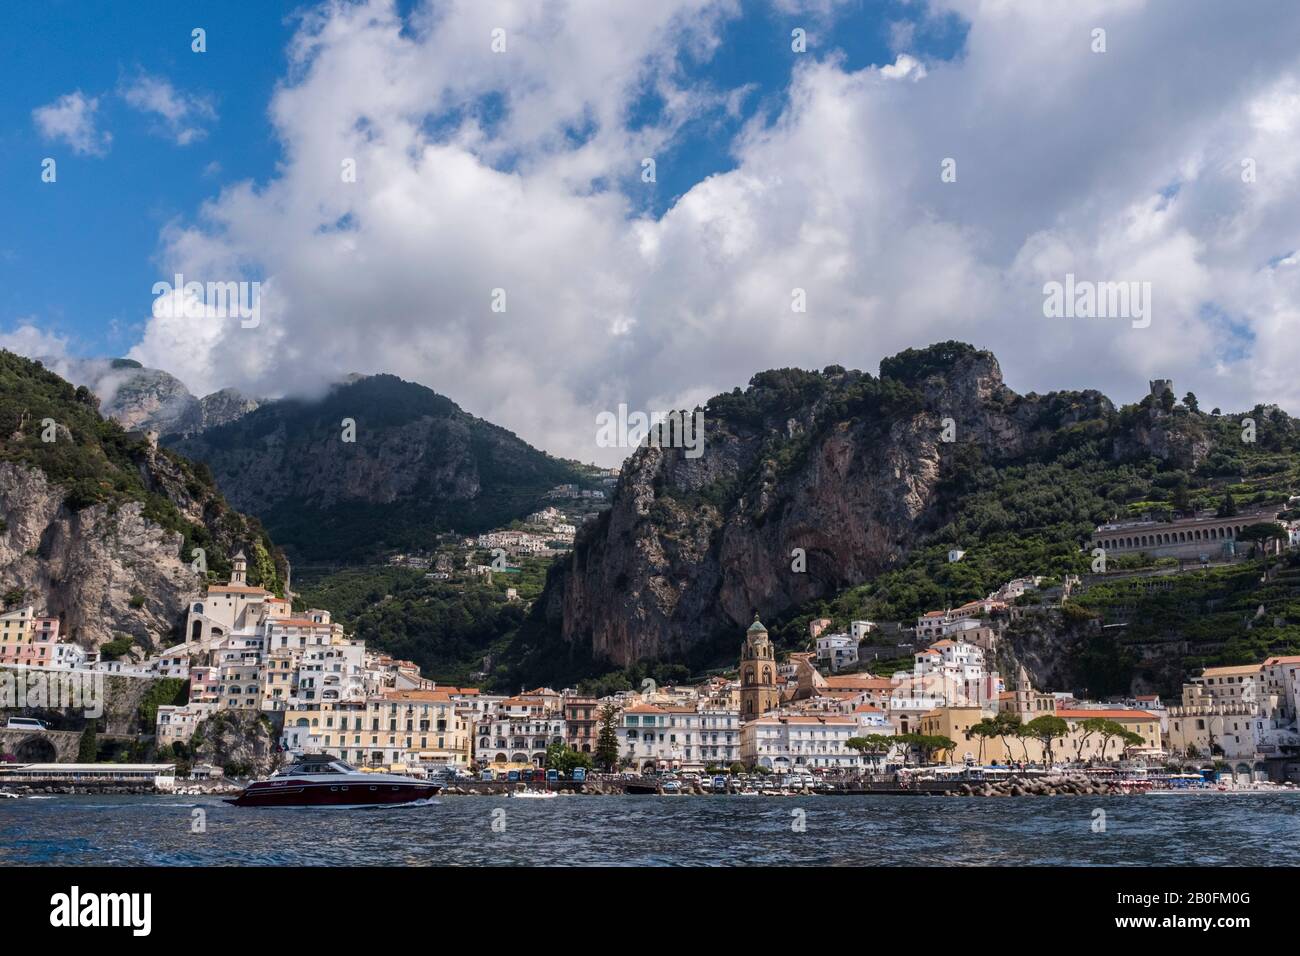 El colorido pueblo de Amalfi visto desde el mar, con espectaculares montañas y cielos de verano en el fondo, en la costa de Italia Foto de stock